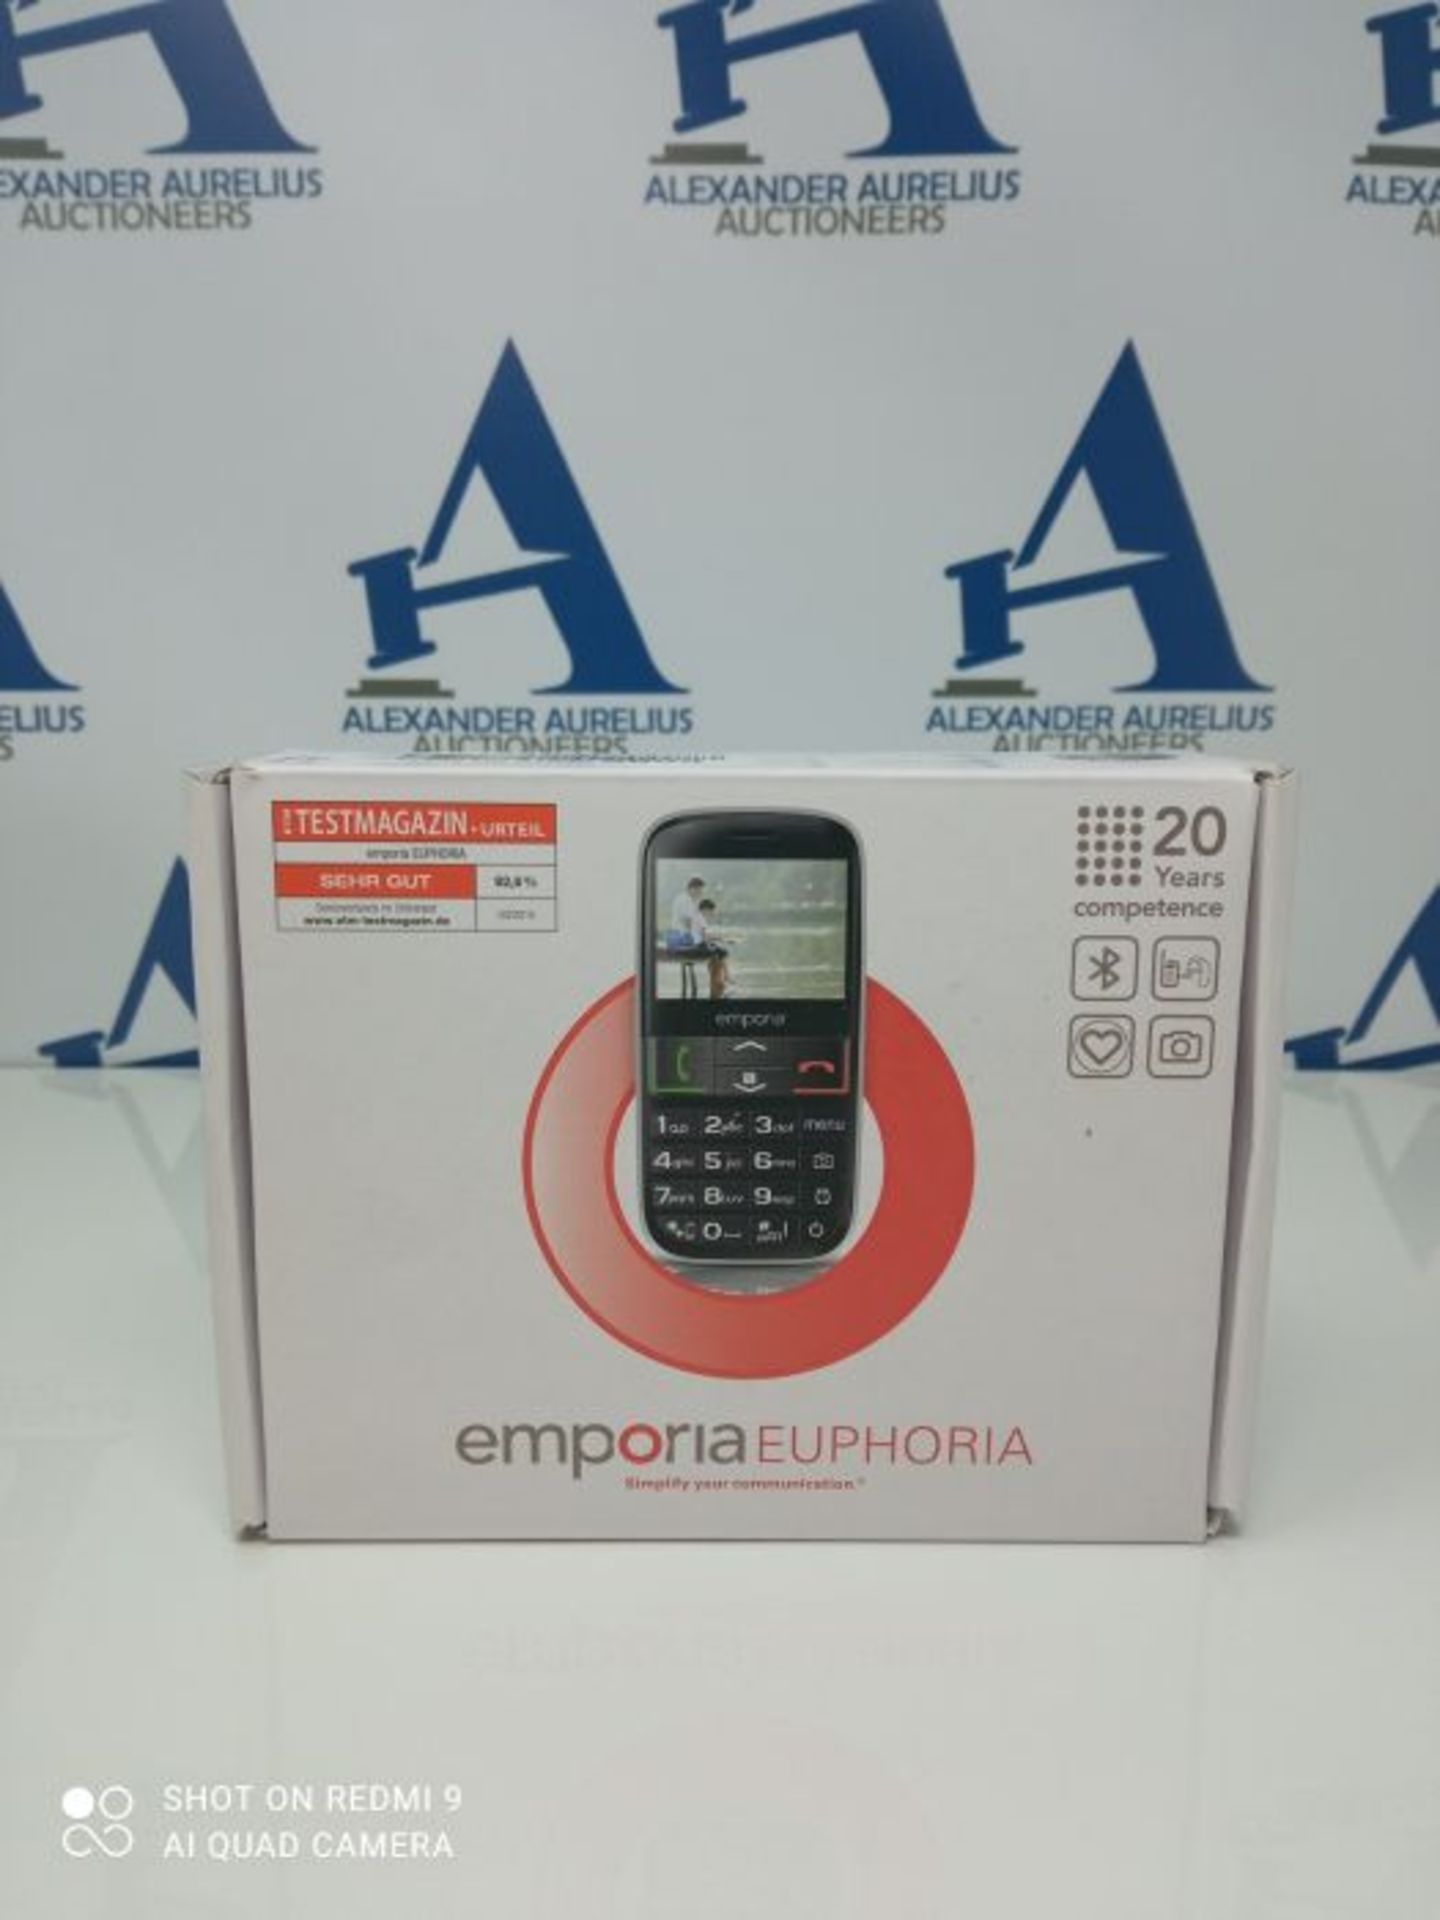 RRP £52.00 Emporia EUPHORIA 2.3" 90g Black, Silver - mobile phones (Single SIM, MiniSIM, Alarm cl - Image 2 of 3